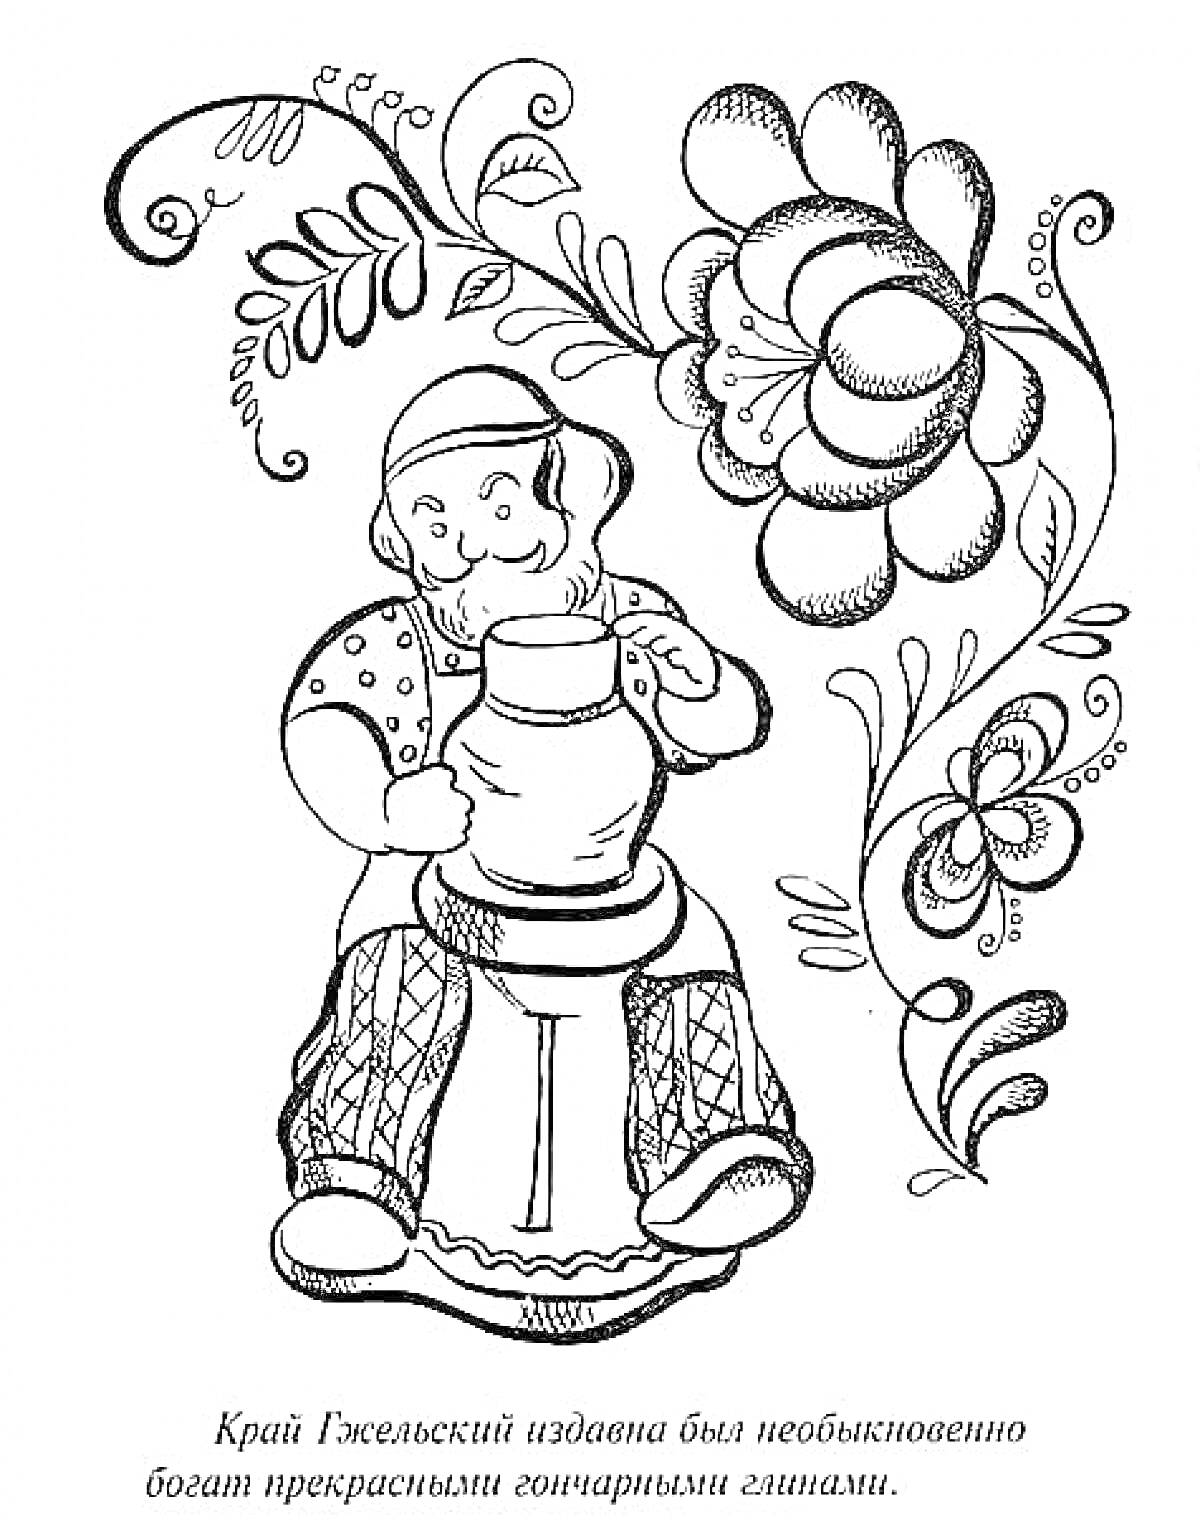 РаскраскаЧеловек, работающий за гончарным кругом, с цветочным орнаментом на фоне